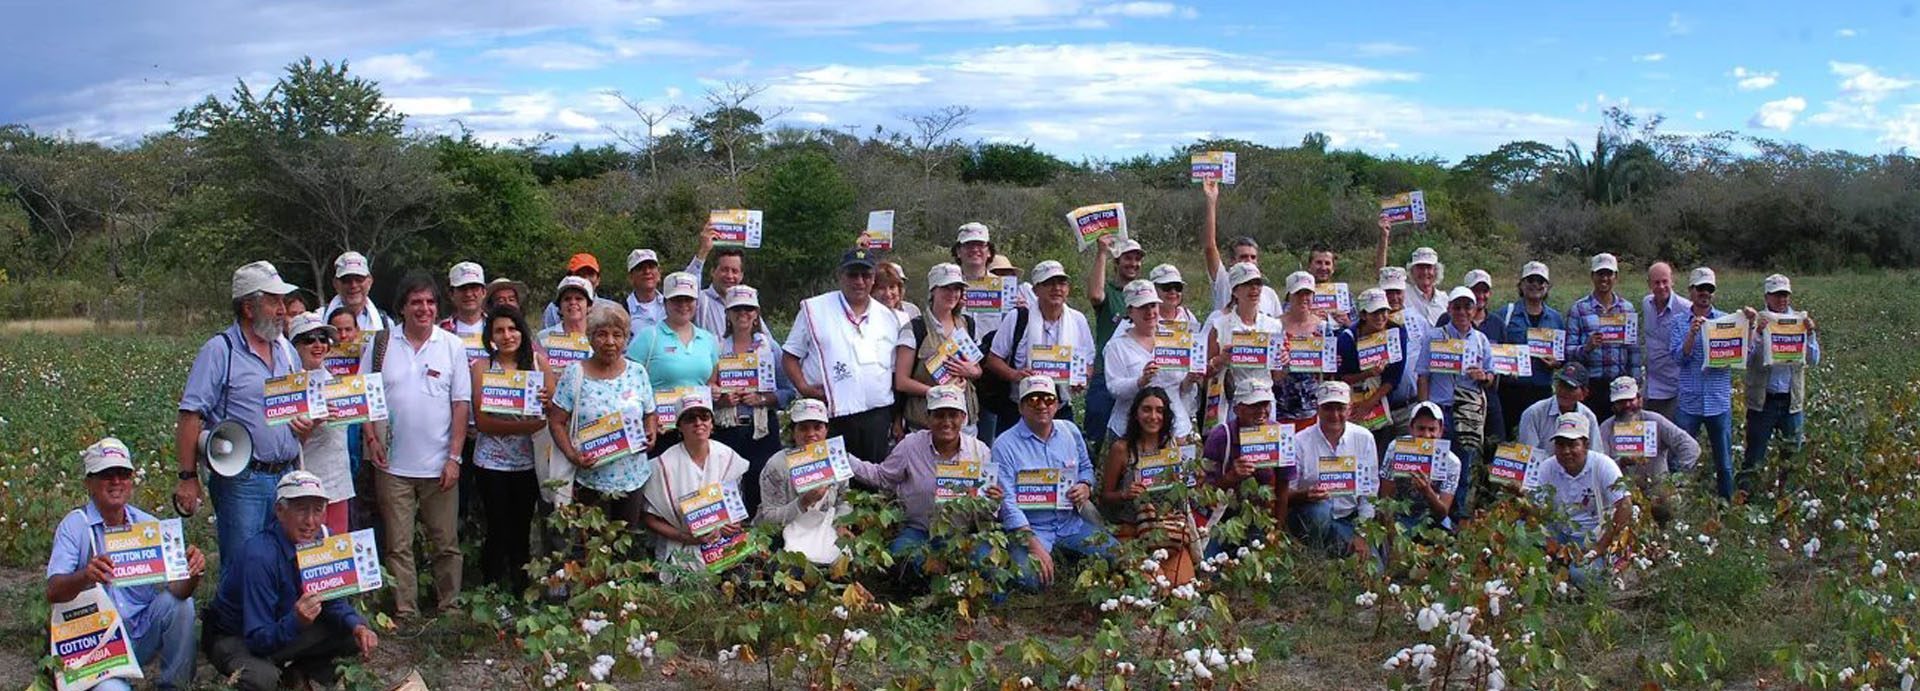 Group photo Día de Campo (field day), El Guamo, Colombia 2015